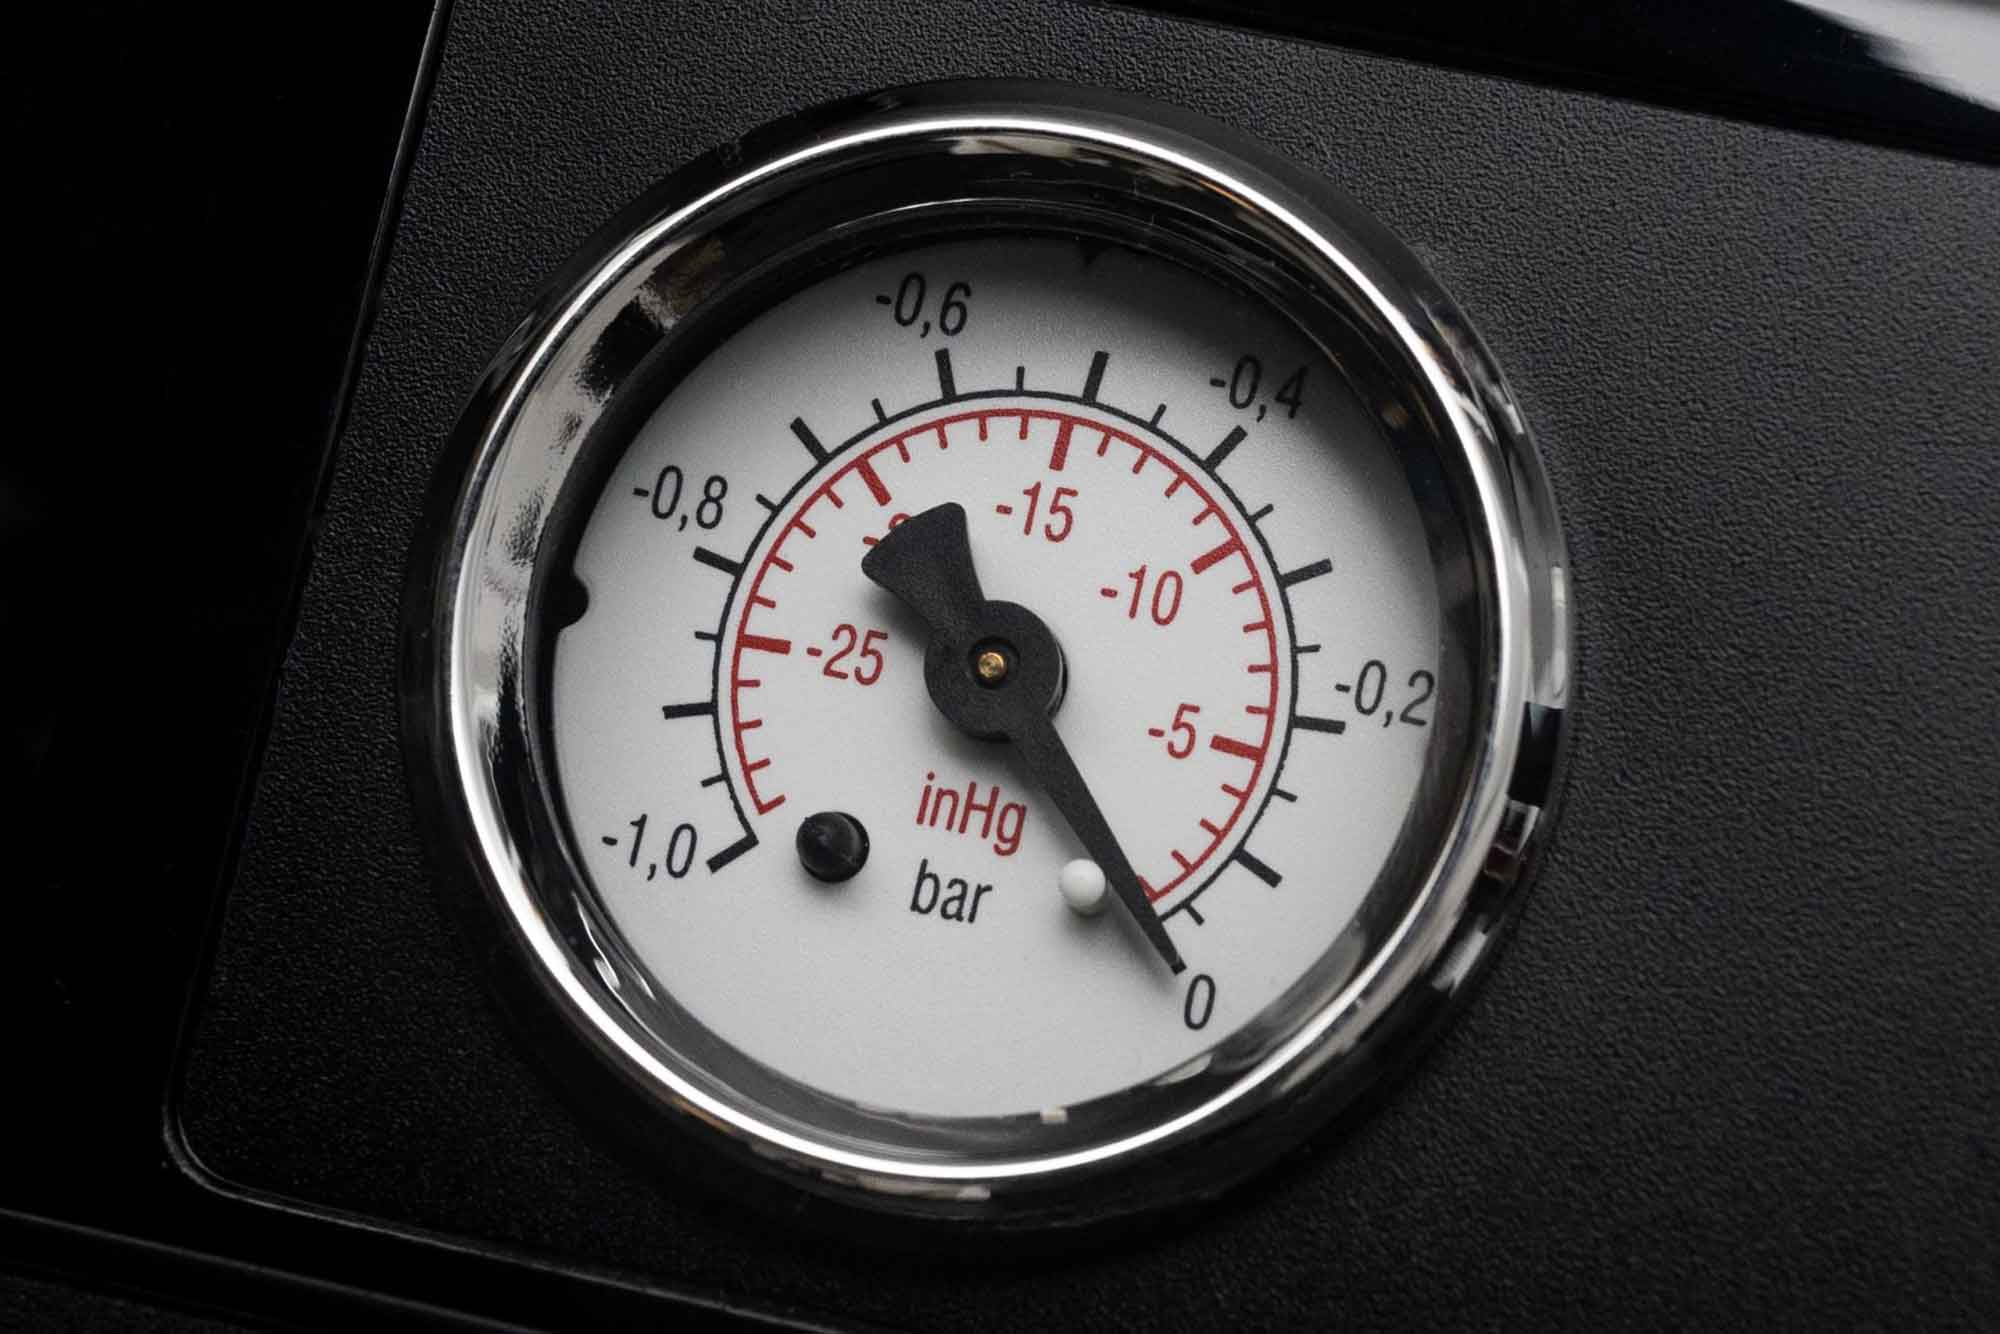 ressure gauge display of the vacuum sealer V.300 Black